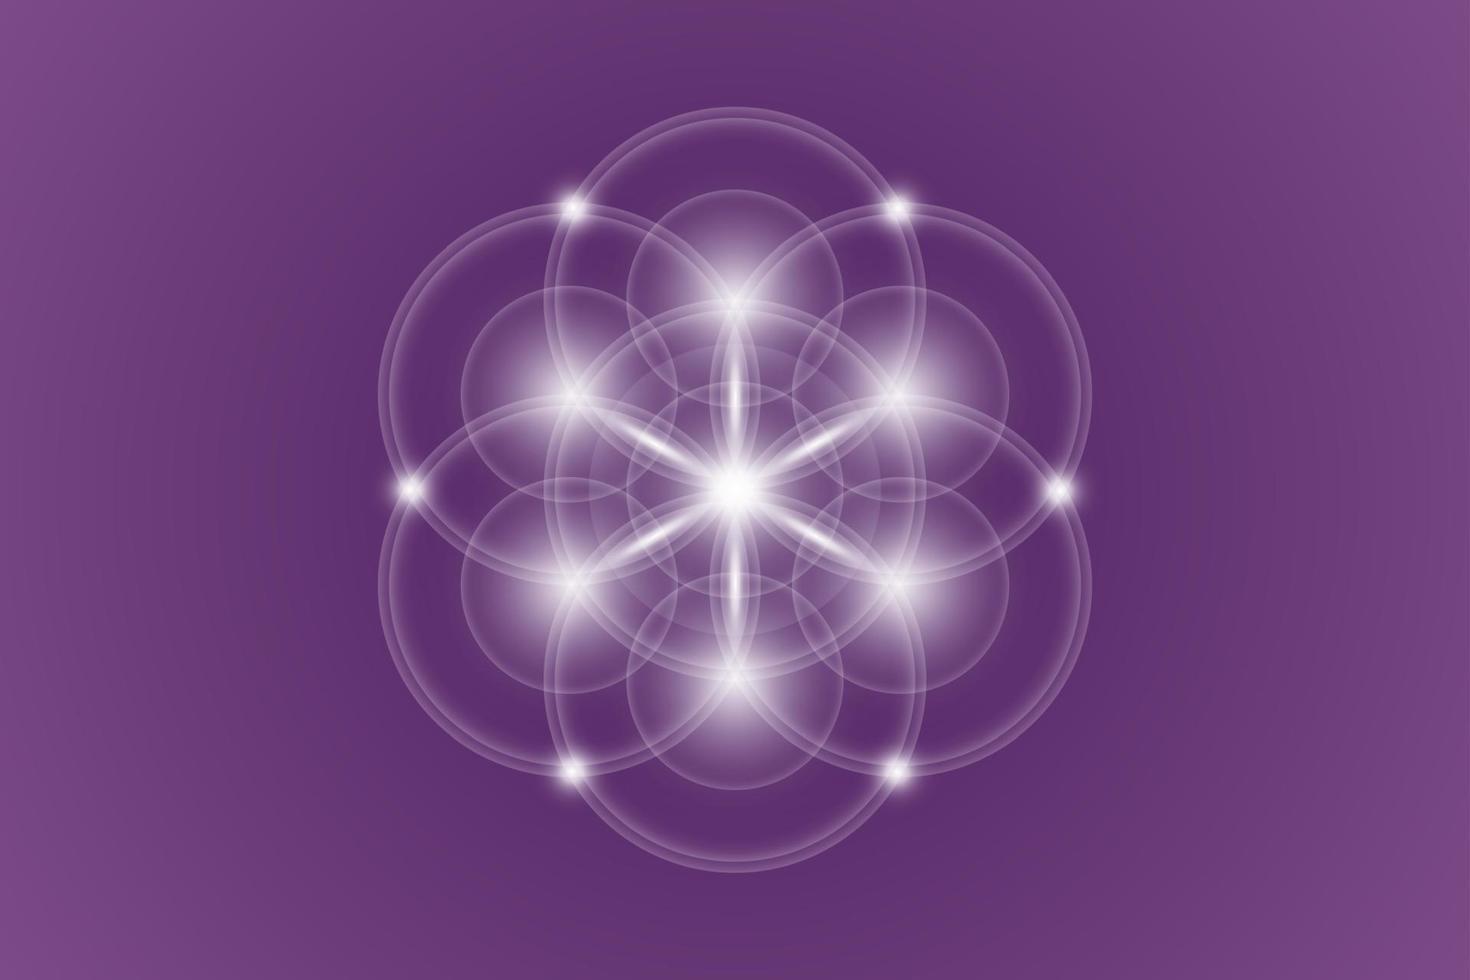 graine de vie, géométrie sacrée, fleur de vie, symbole de logo lumineux d'harmonie et d'équilibre, ornement géométrique brillant, vecteur isolé sur fond violet